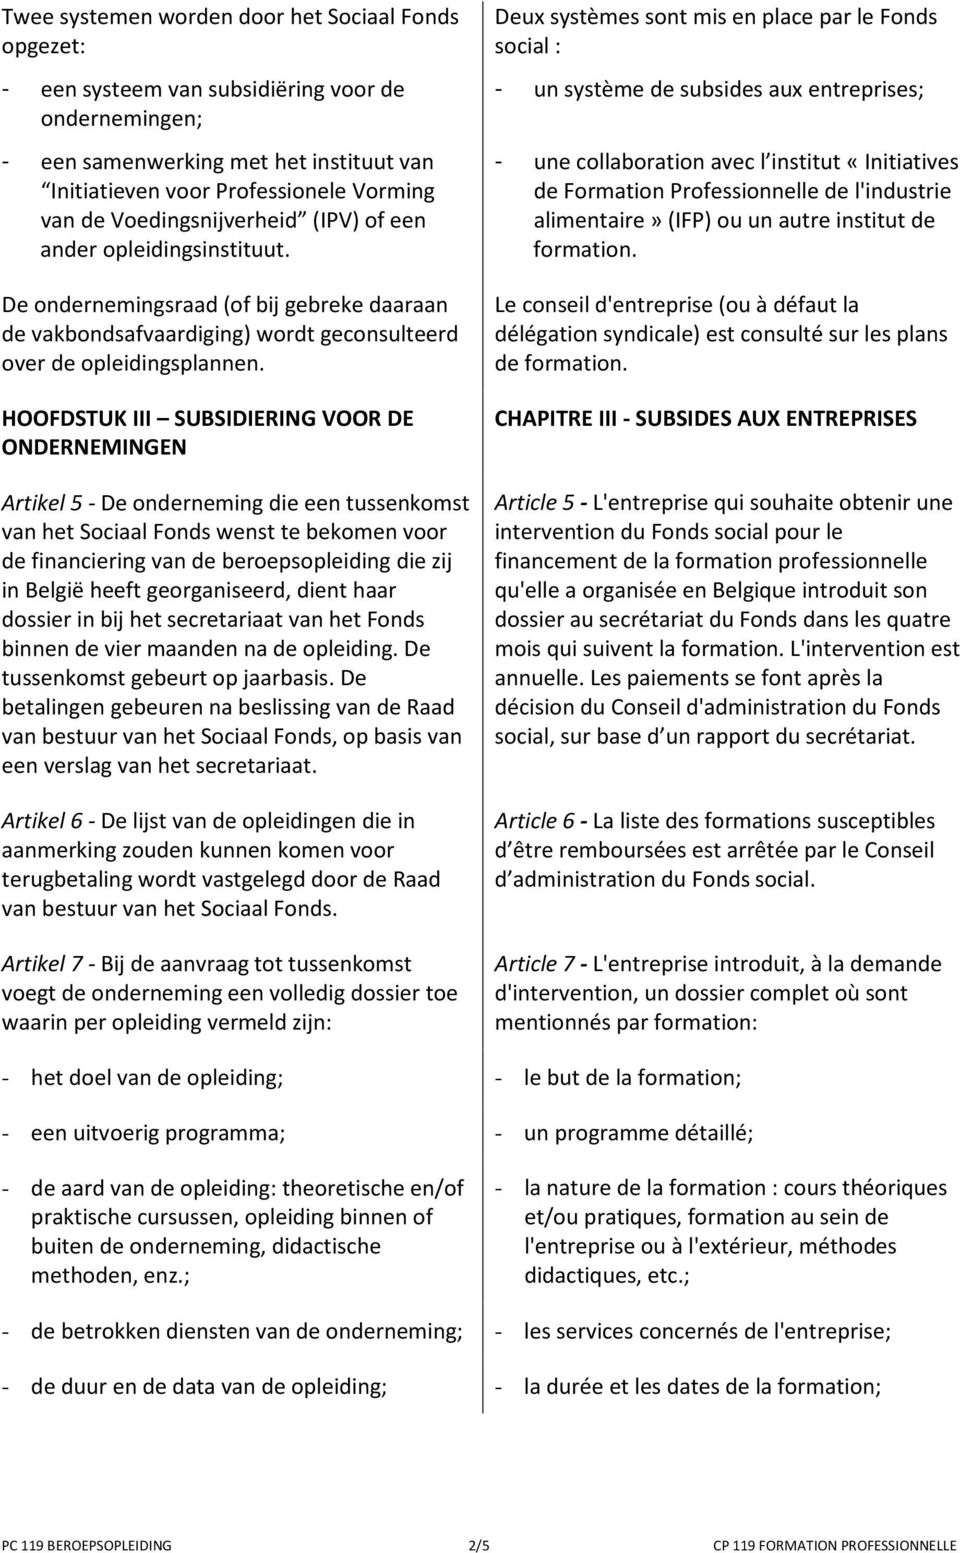 HOOFDSTUK III SUBSIDIERING VOOR DE ONDERNEMINGEN Artikel 5 - De onderneming die een tussenkomst van het Sociaal Fonds wenst te bekomen voor de financiering van de beroepsopleiding die zij in België